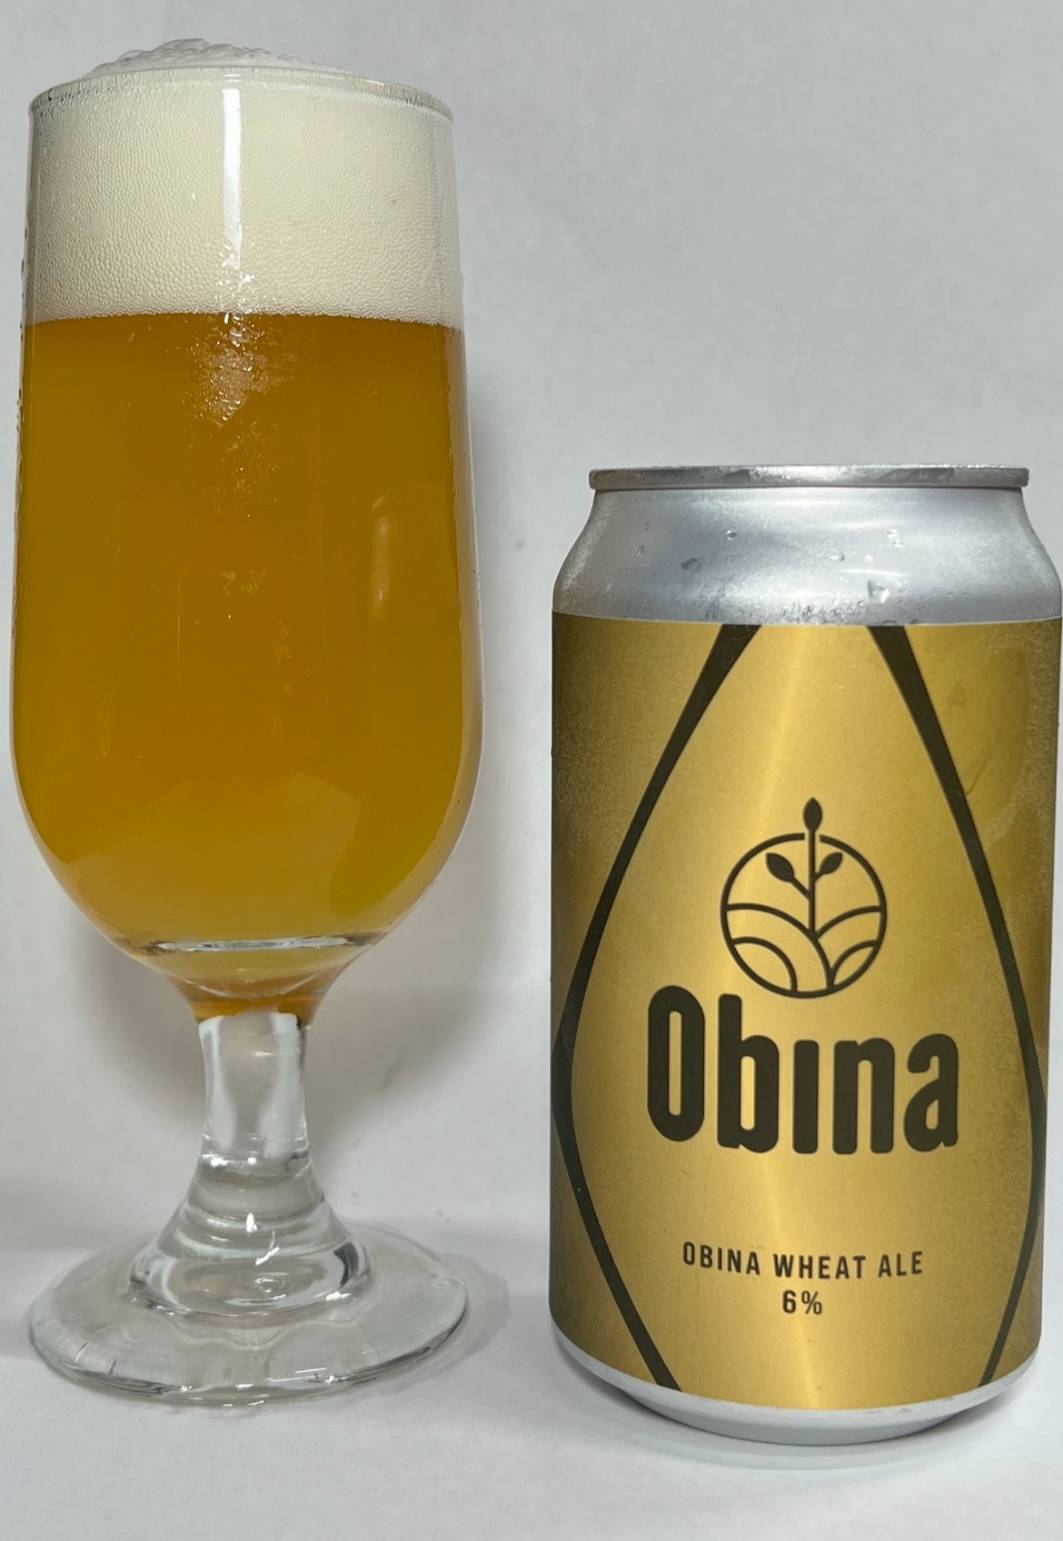 Obina Wheat Ale - 1 Can